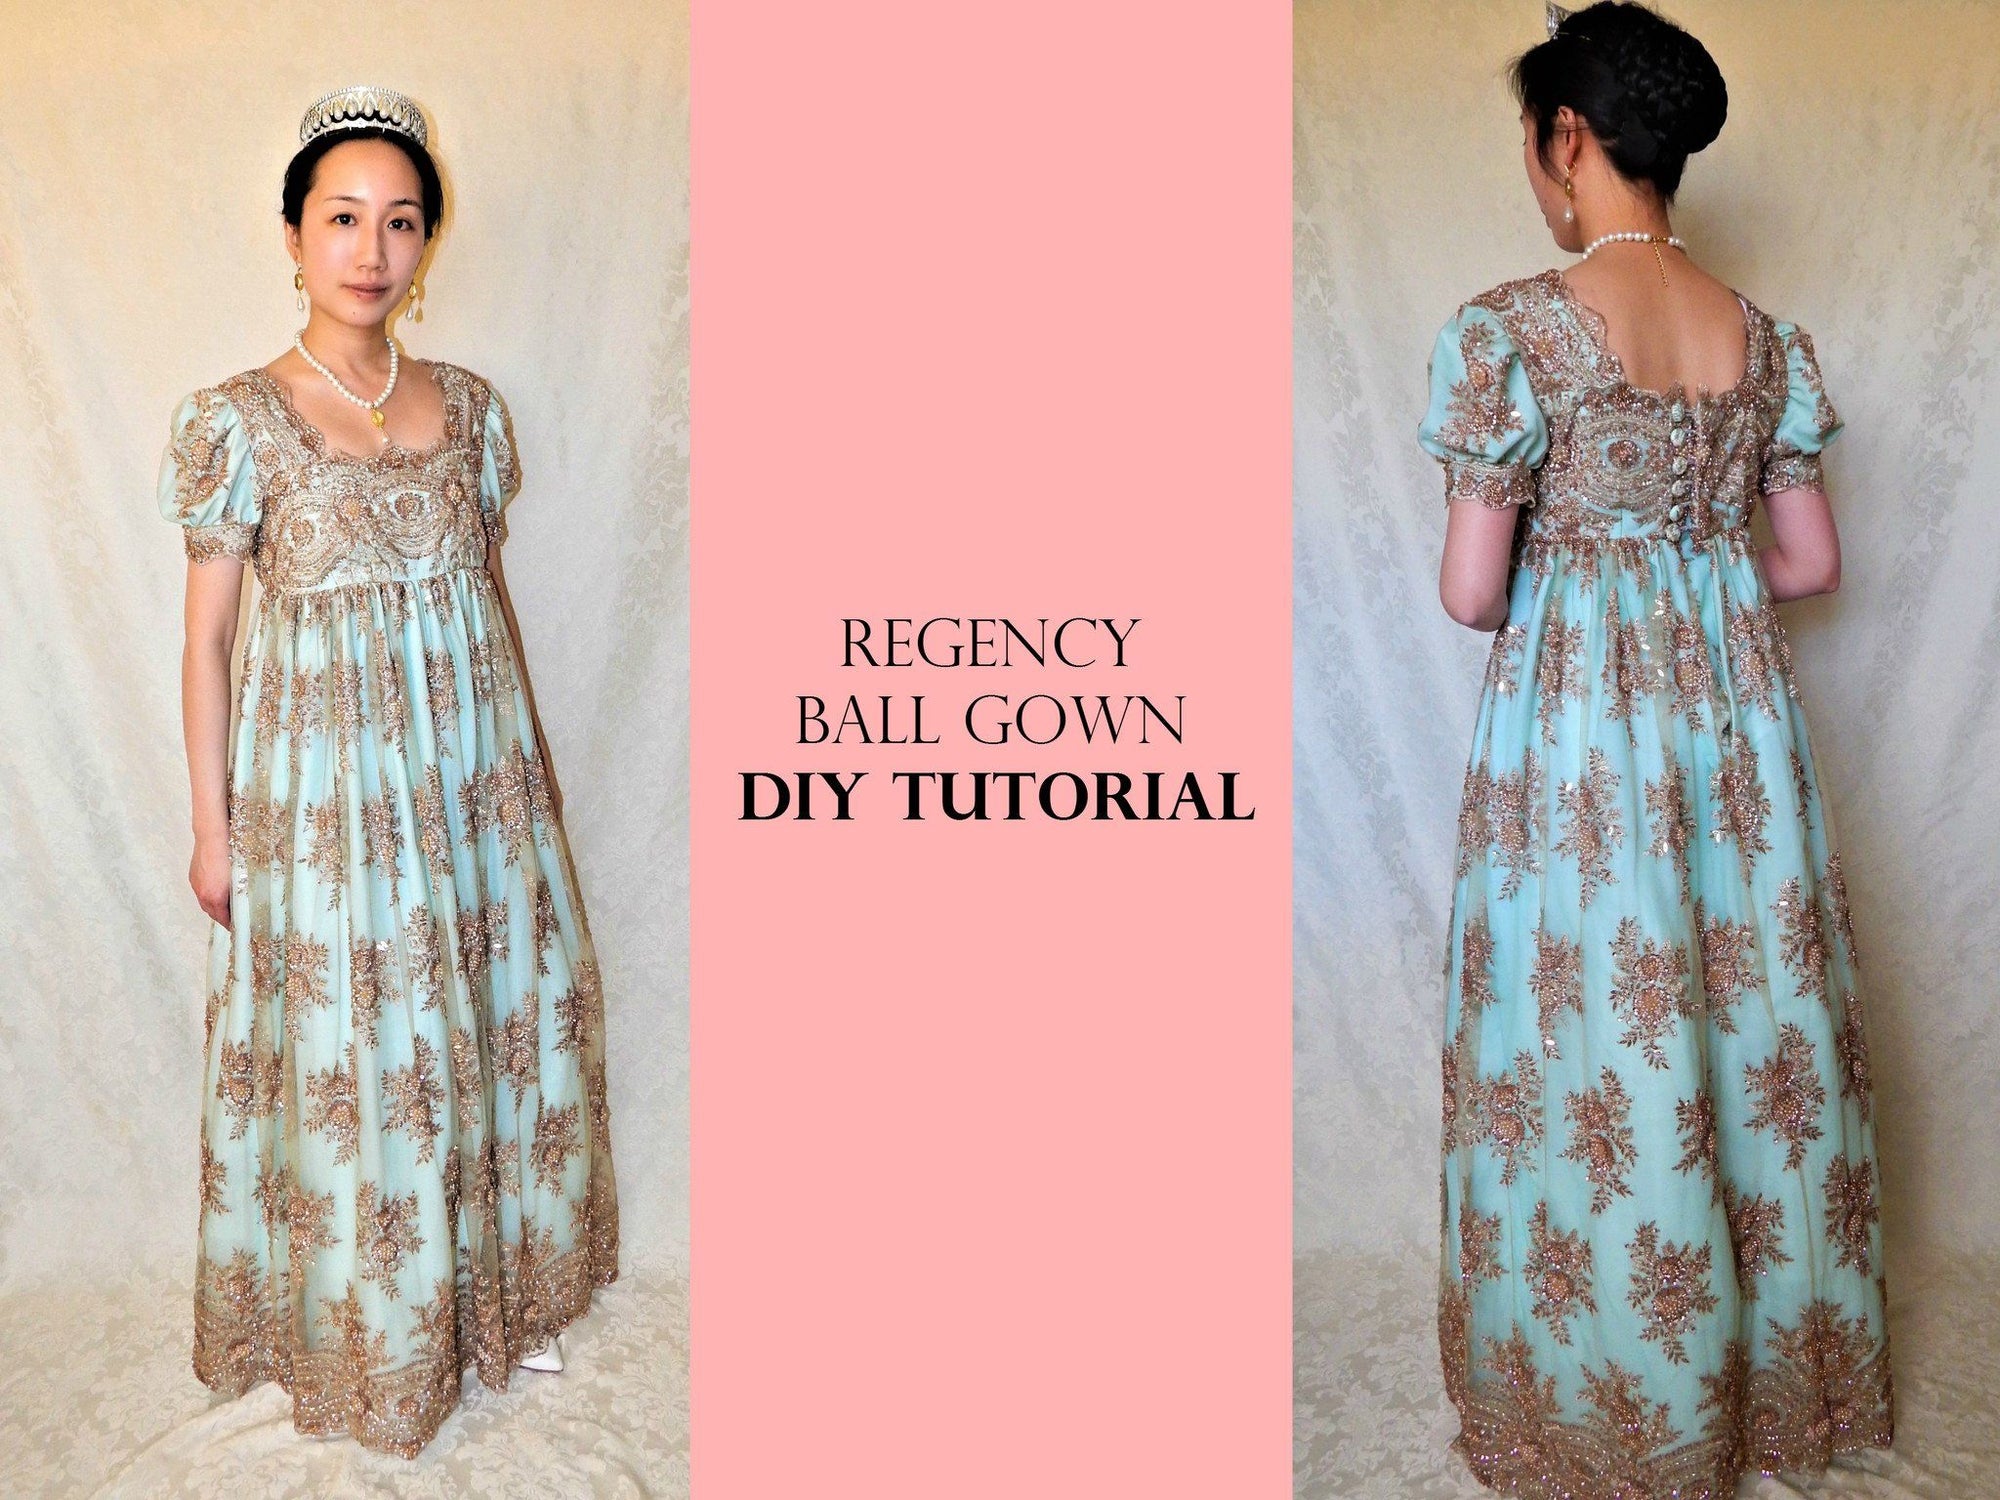 DIY Regency Ball Gown Tutorial